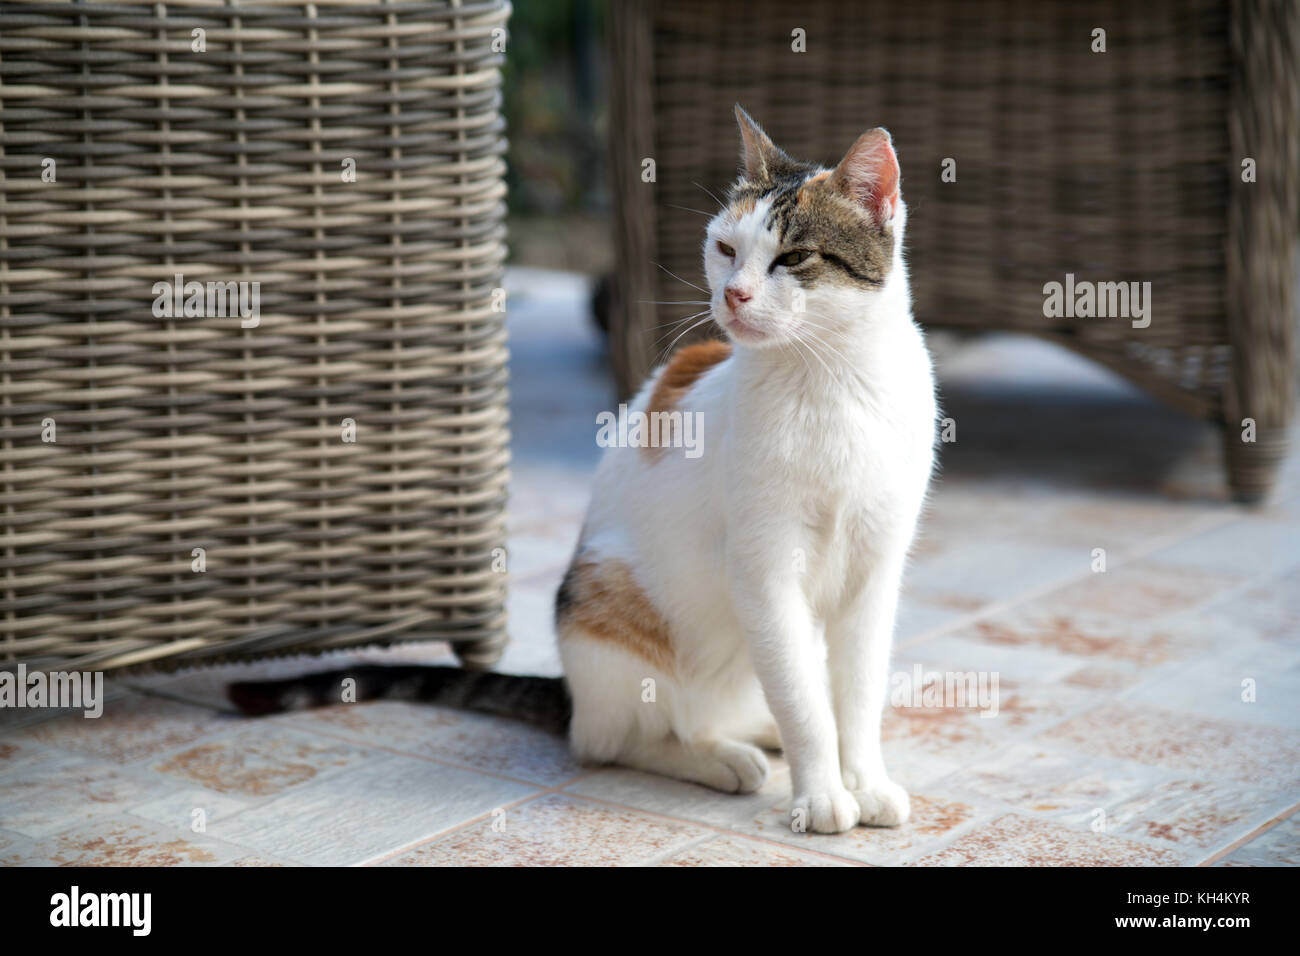 Cat, Kepahlonia Fiscardo grec Banque D'Images